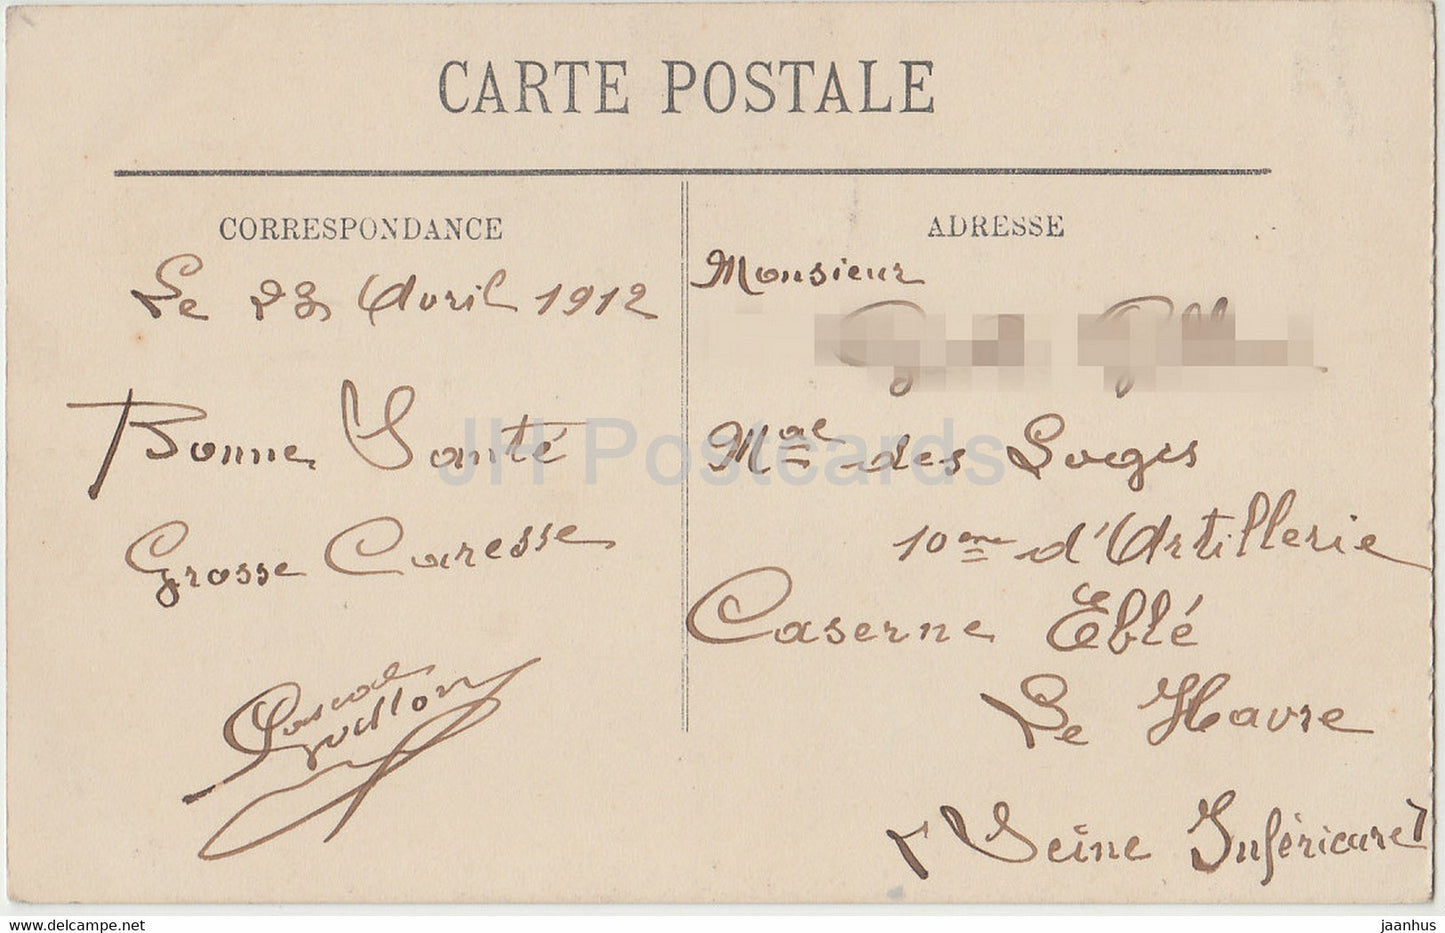 Arles - Le Musée - musée - 38 - carte postale ancienne - 1912 - France - occasion